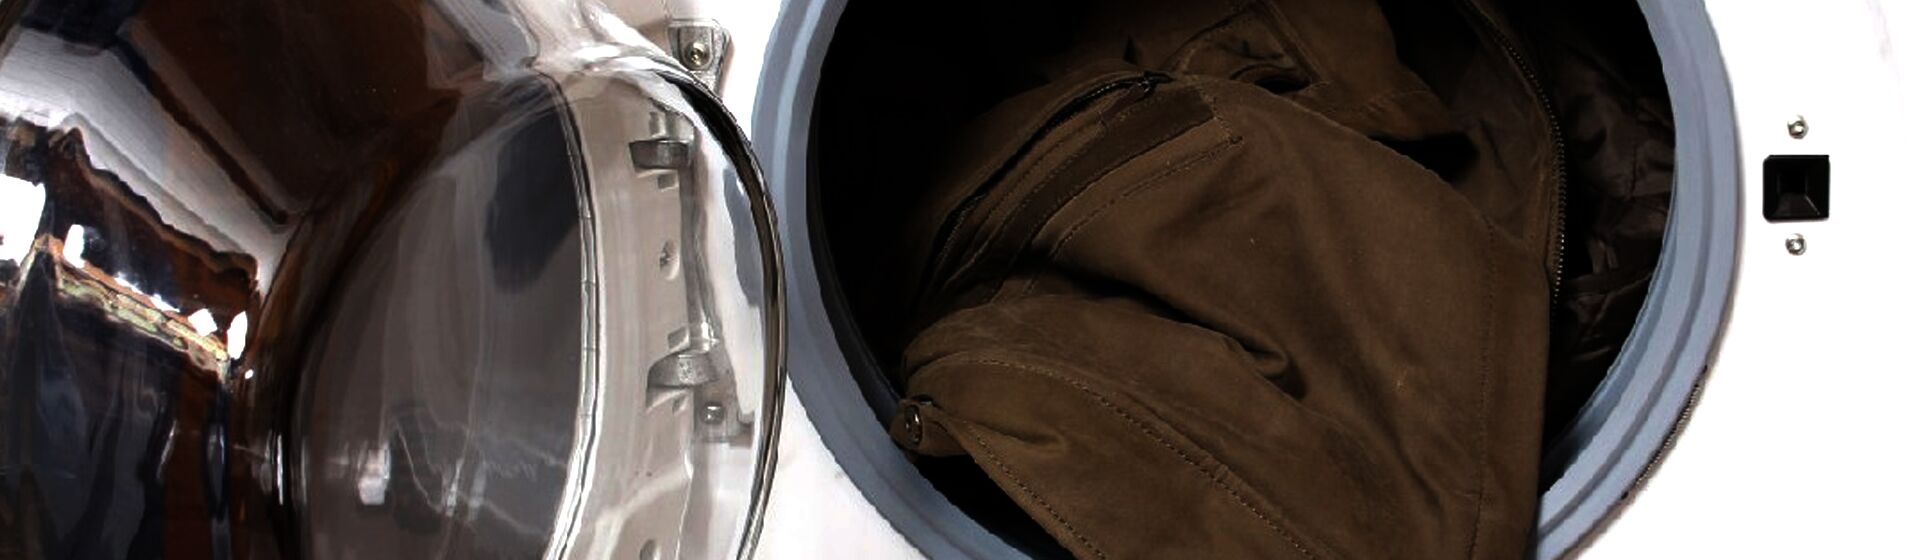 Как стирать куртку из экокожи в стиральной машине